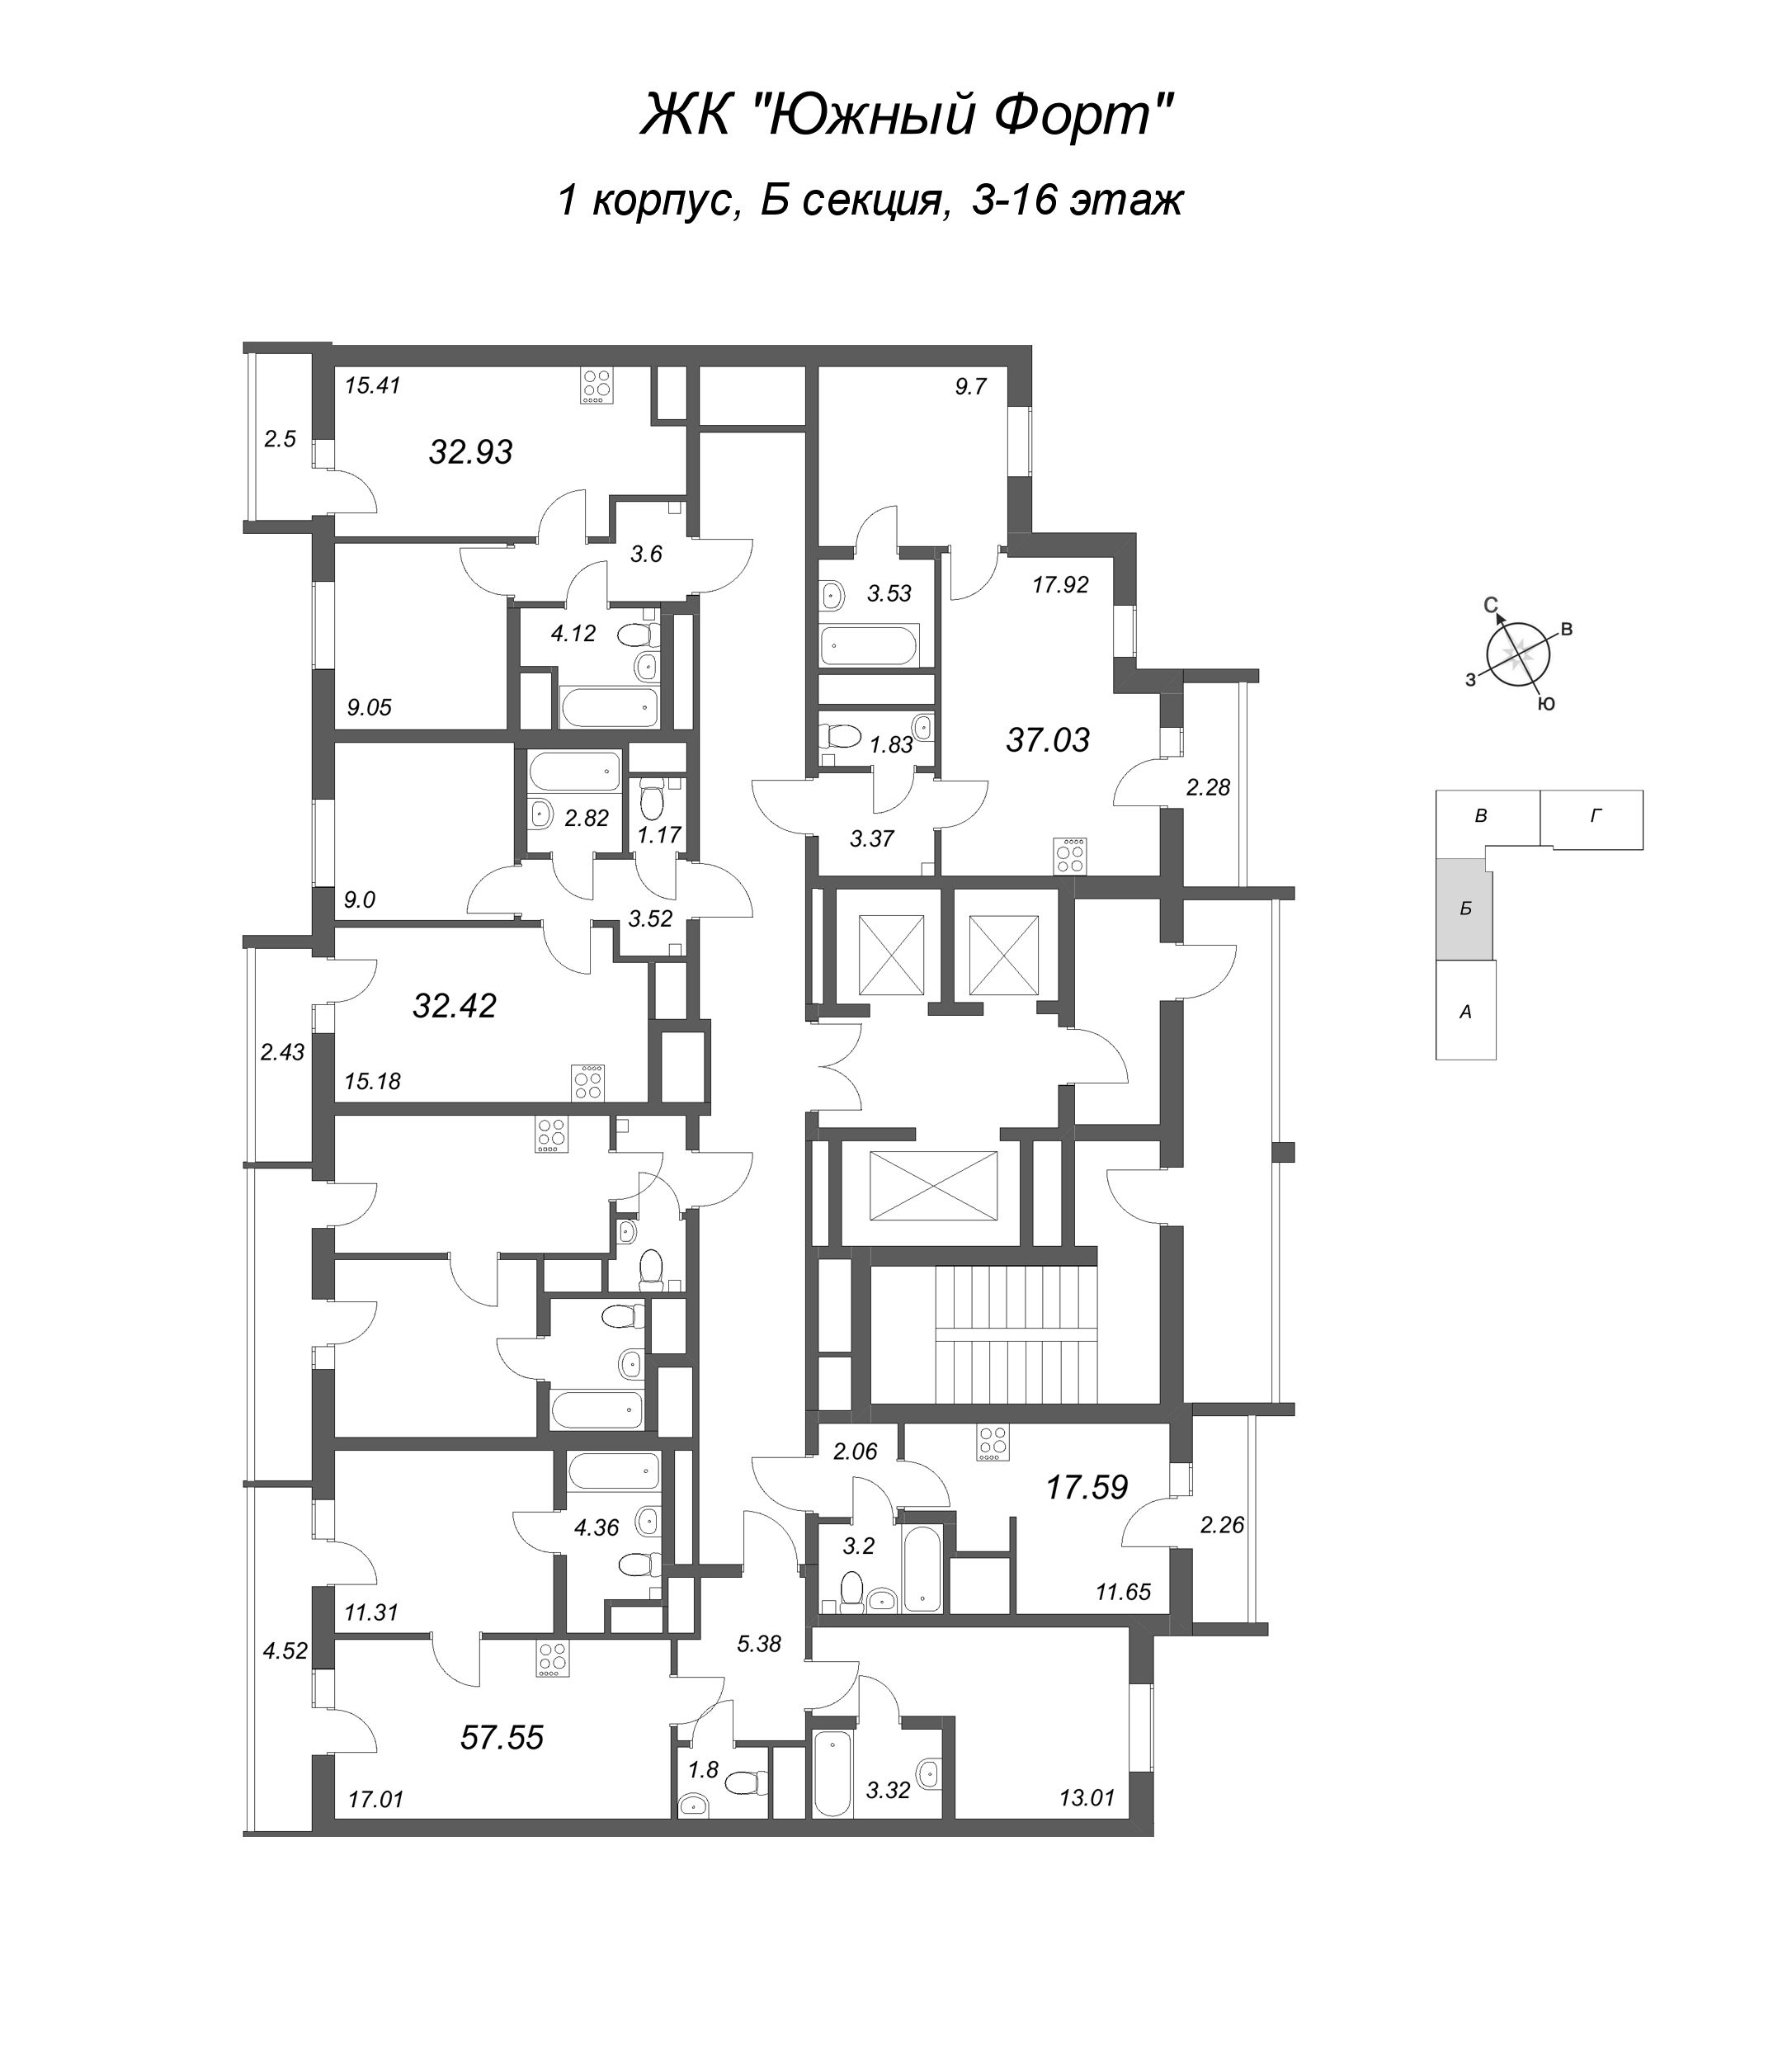 Квартира-студия, 17.59 м² в ЖК "Южный форт" - планировка этажа